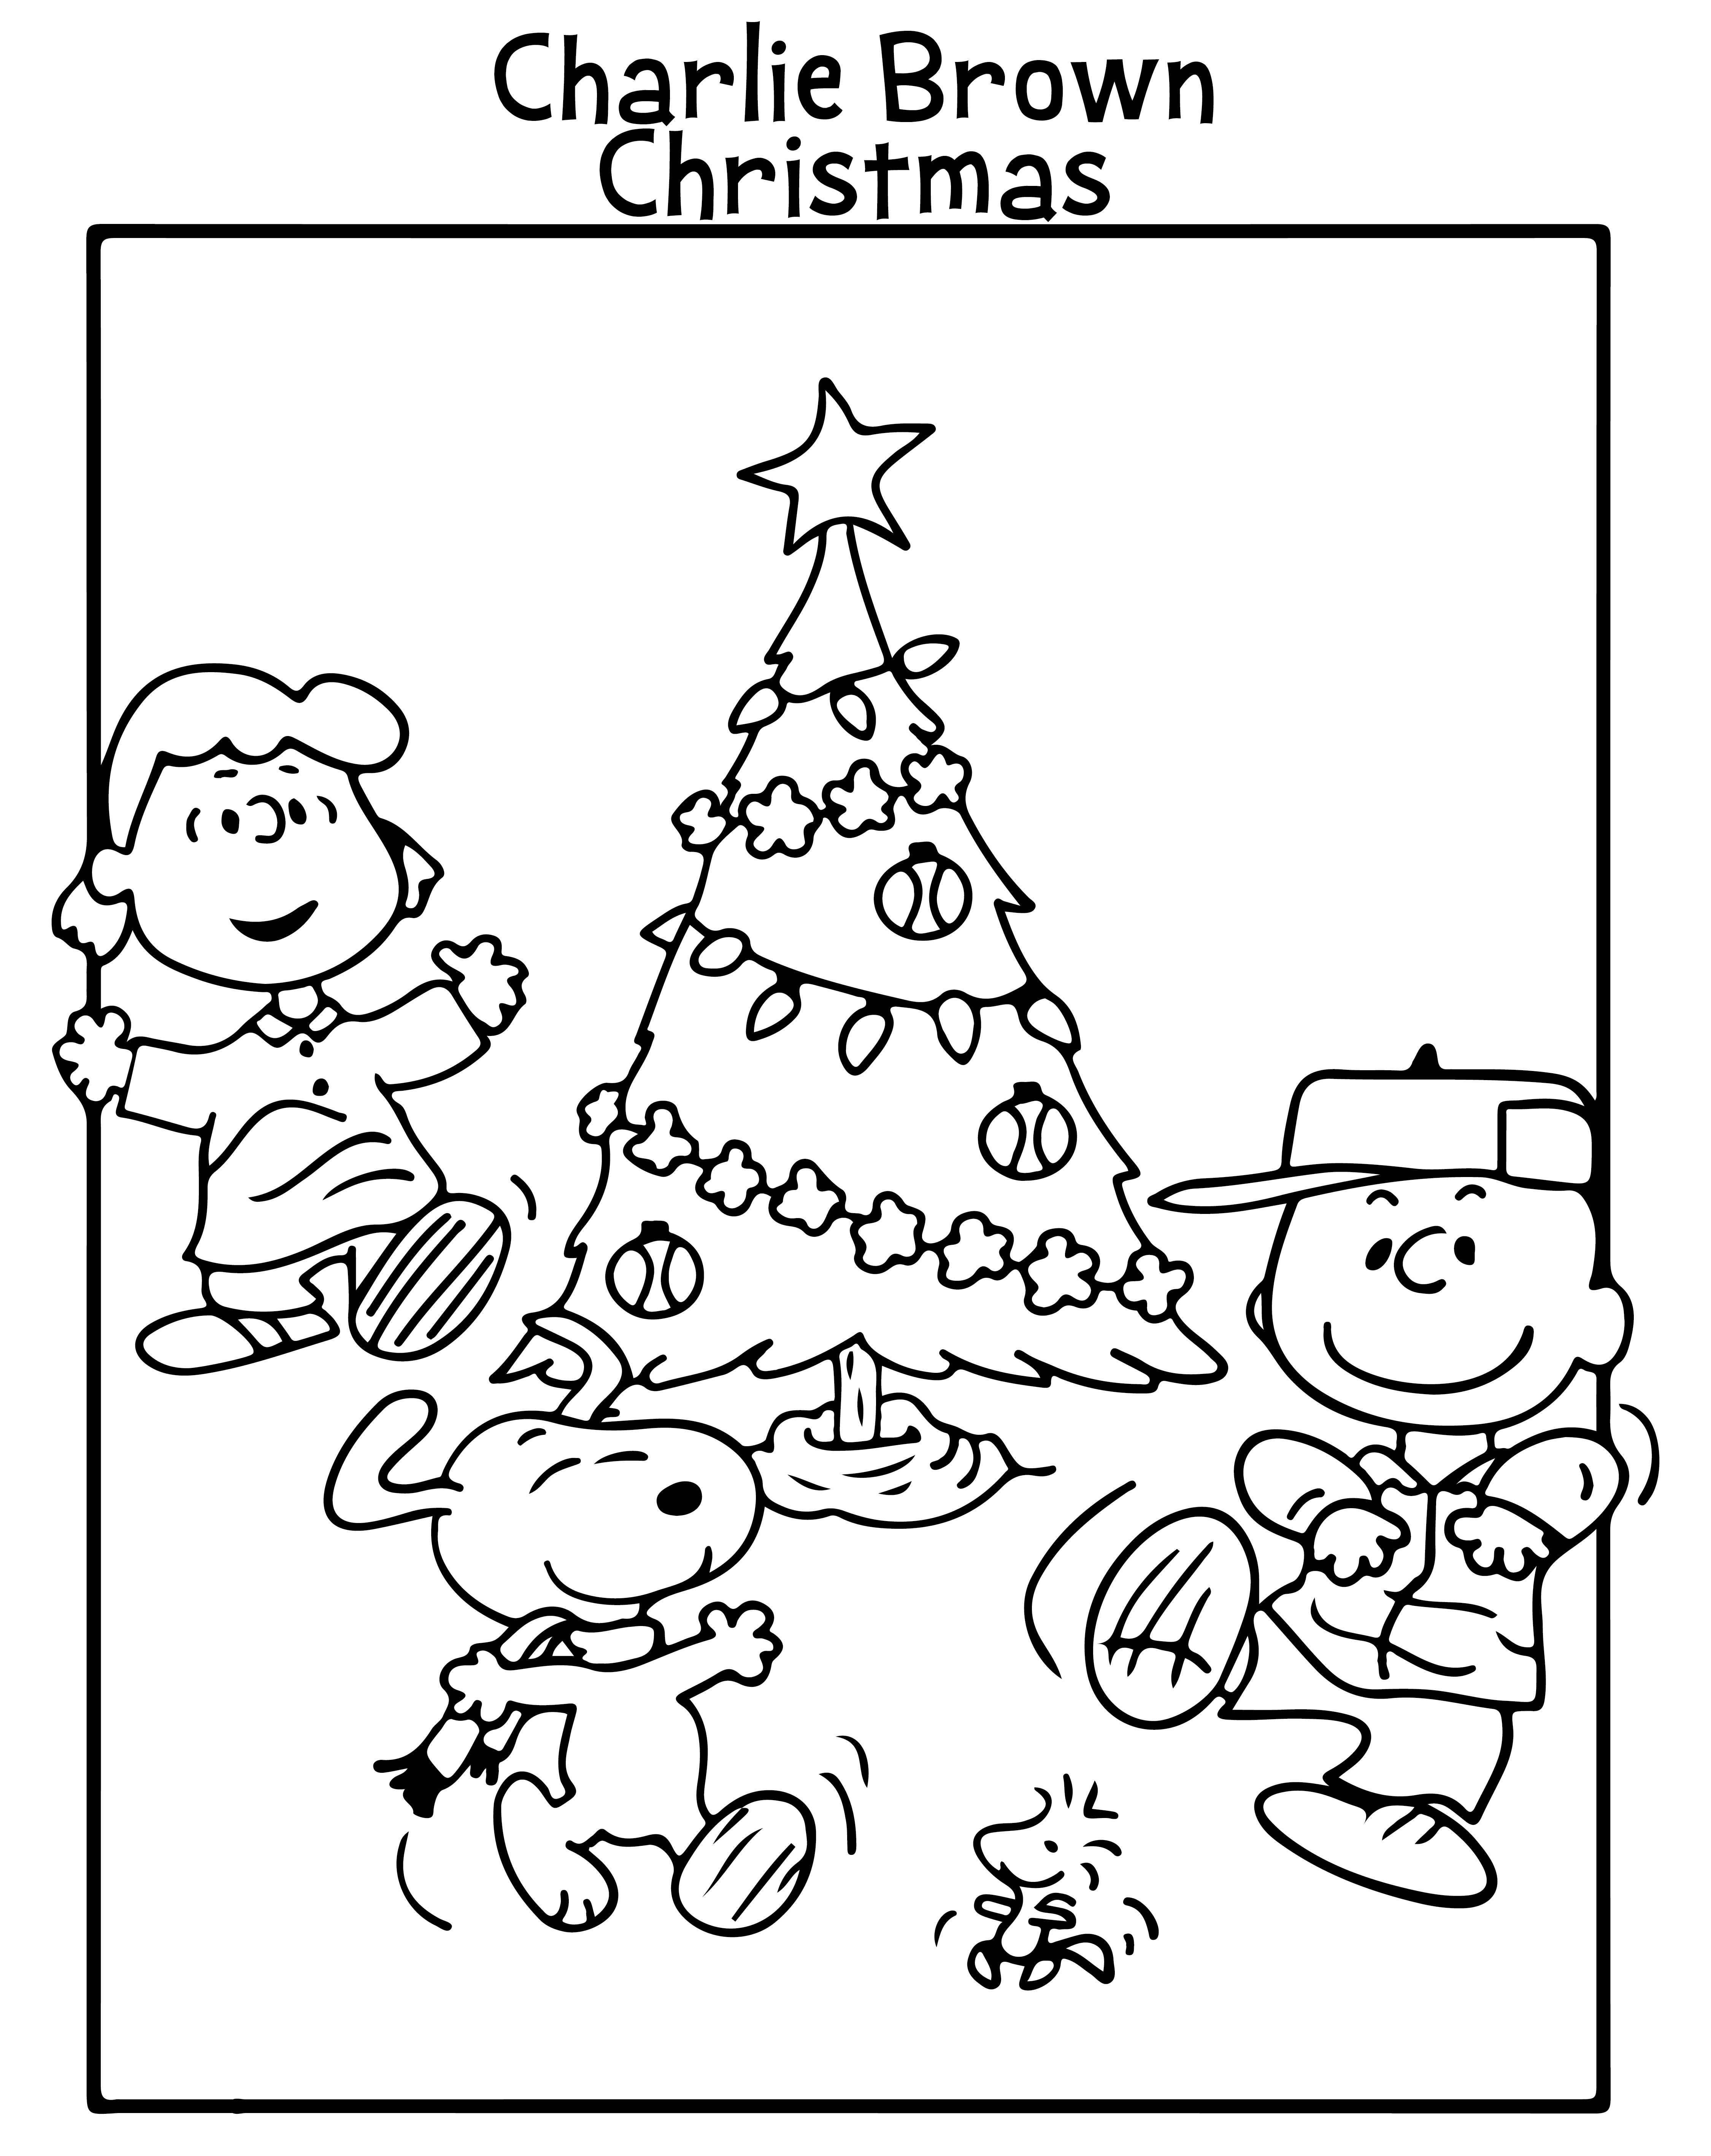 Charlie Brown Christmas Worksheets